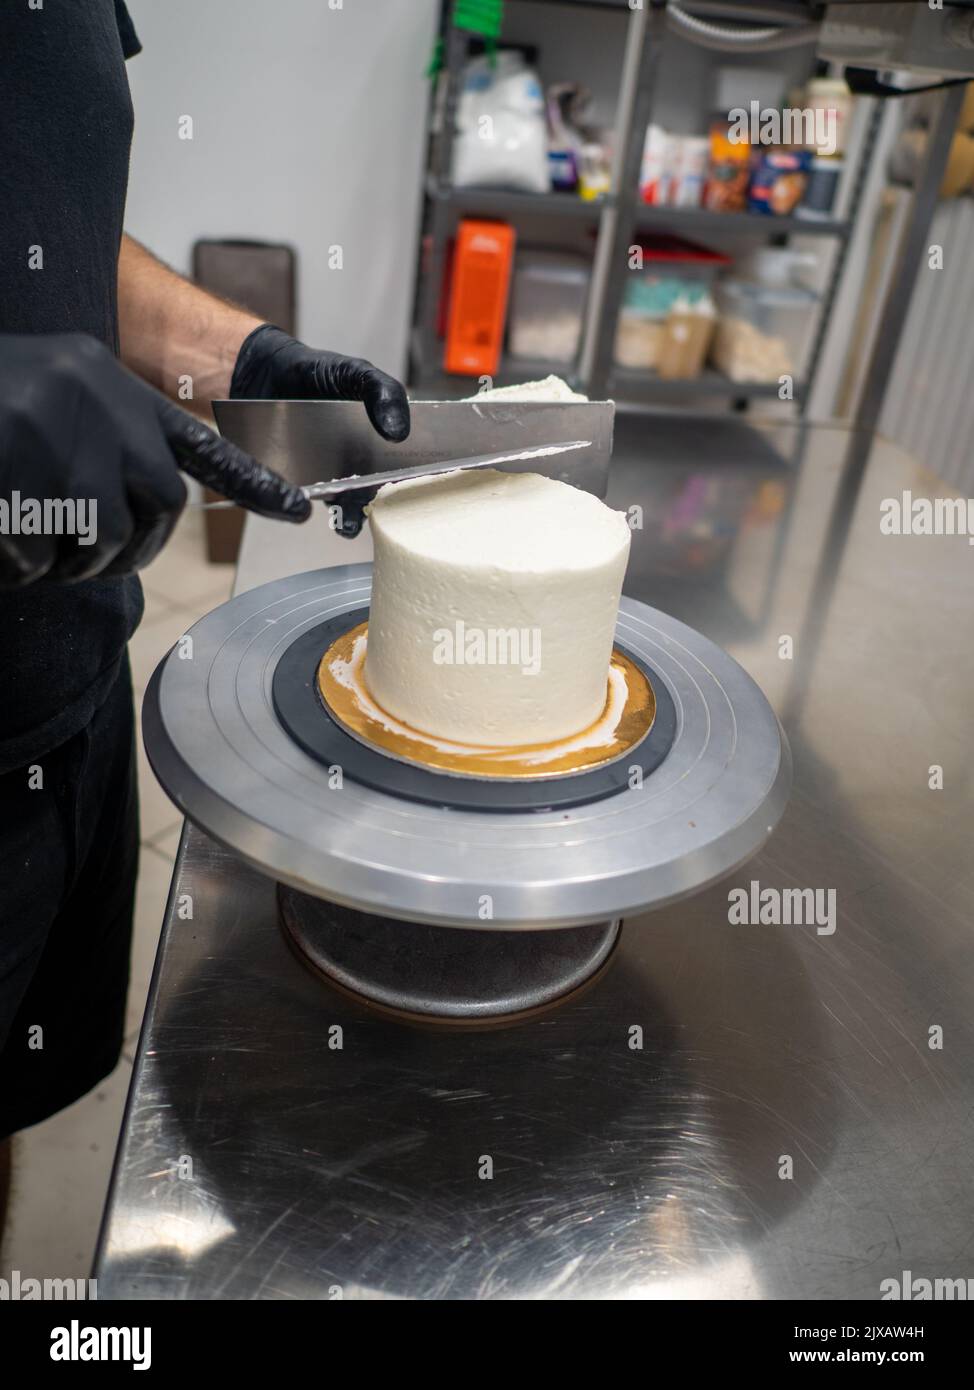 Decorador con espátula y rascador para suavizar el cremoso de mantequilla en un pastel esmerilado Foto de stock